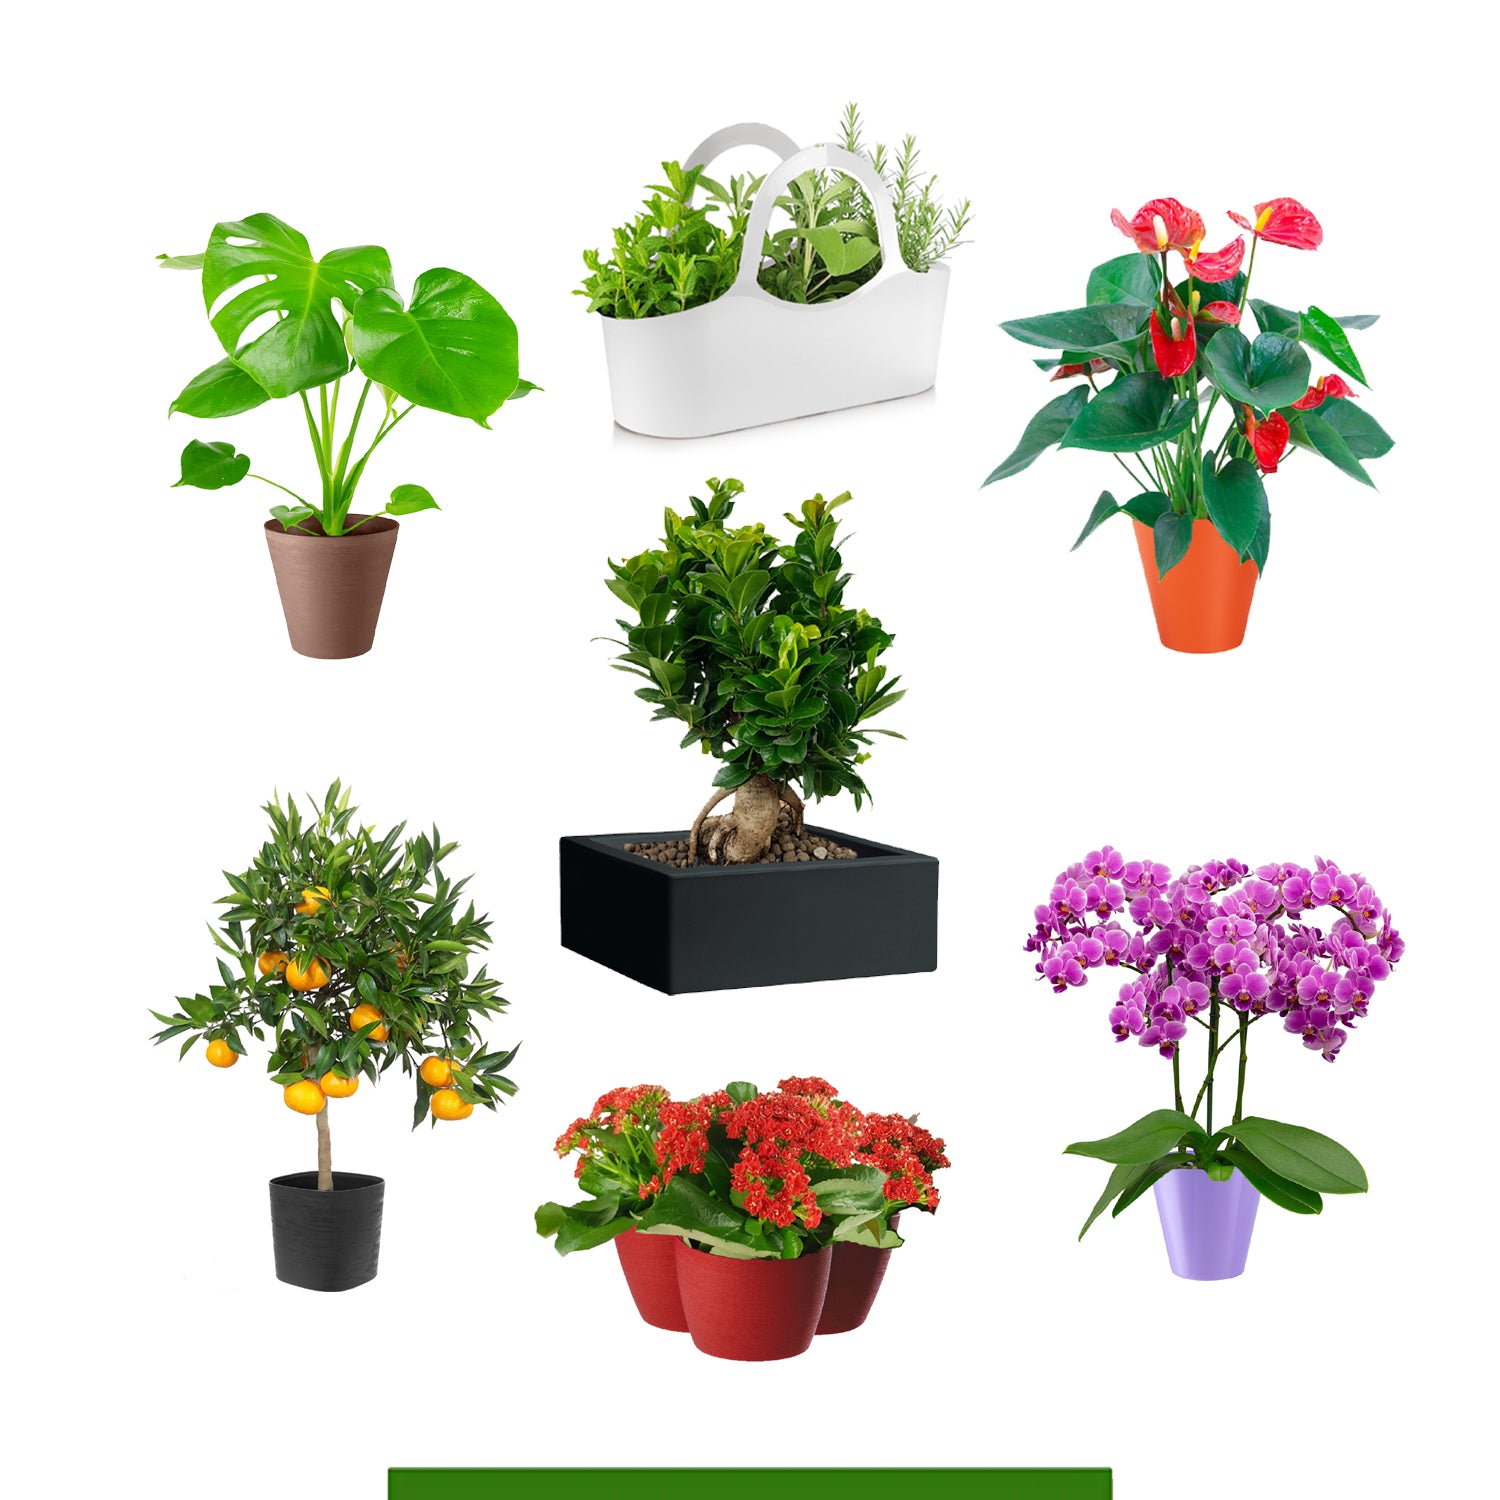 Tutte le piante